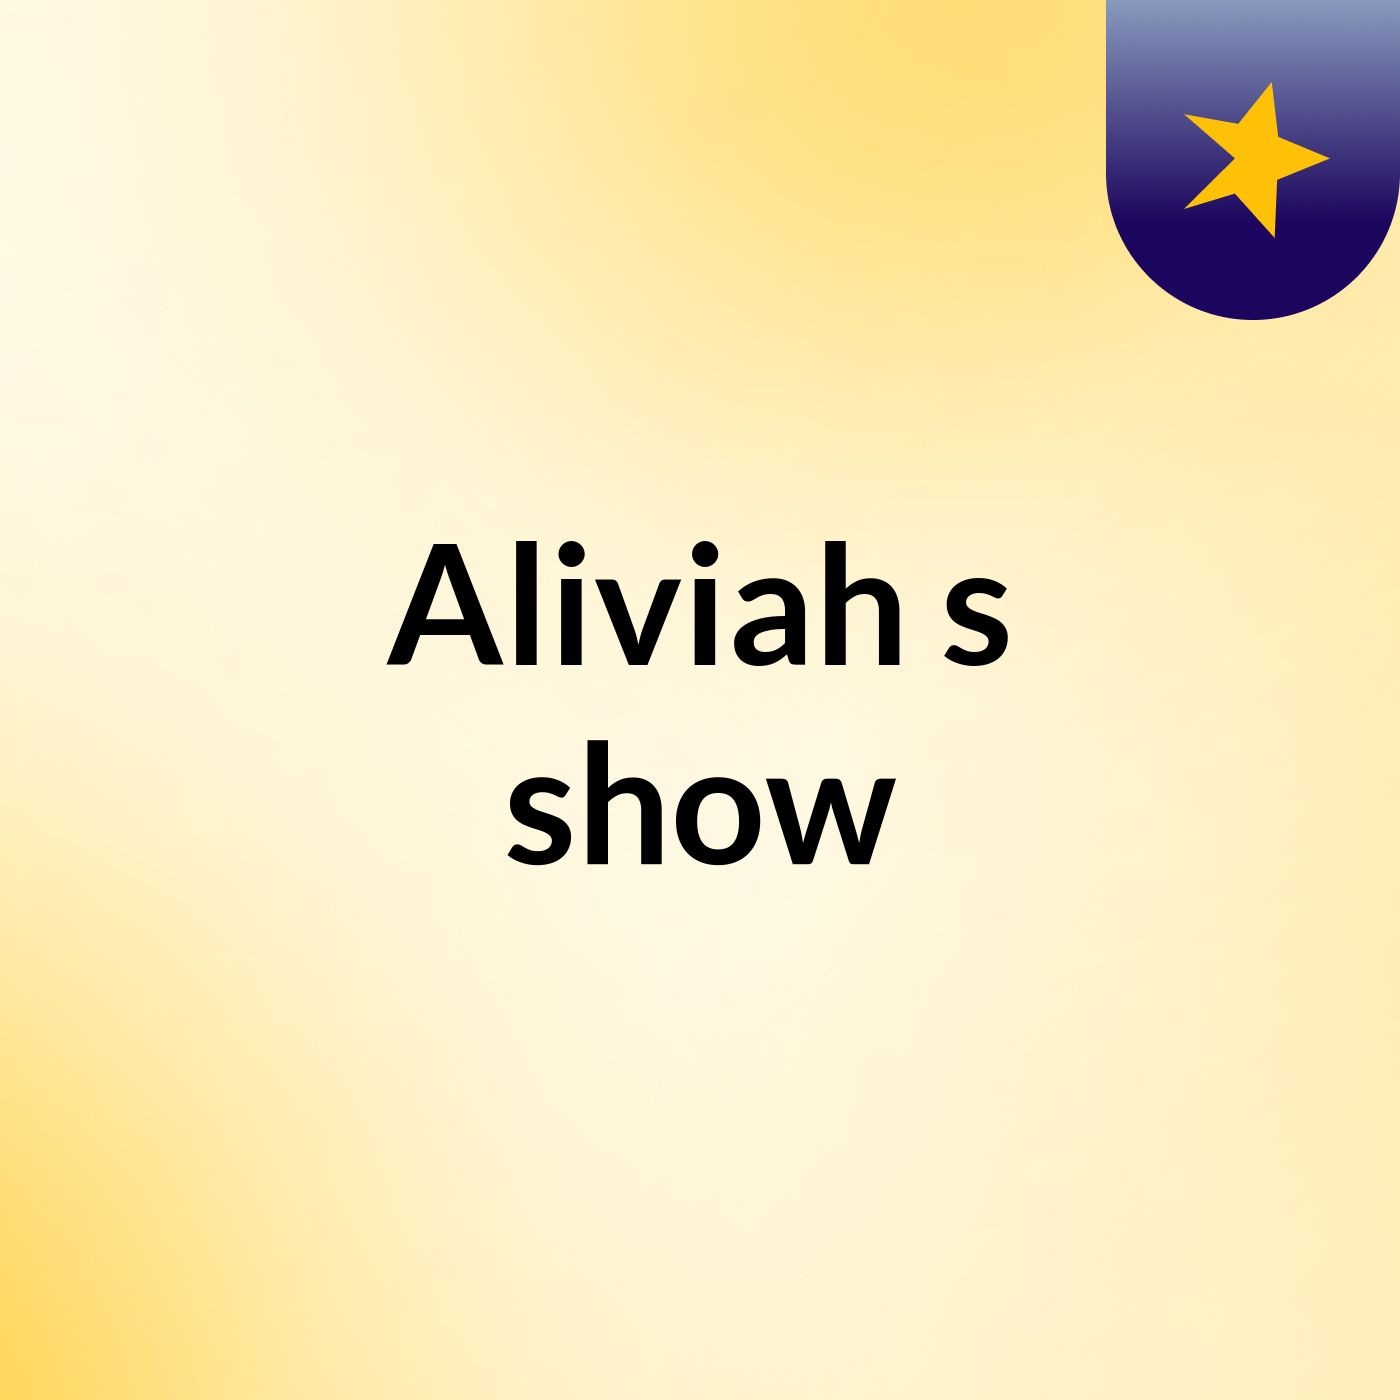 Aliviah's show